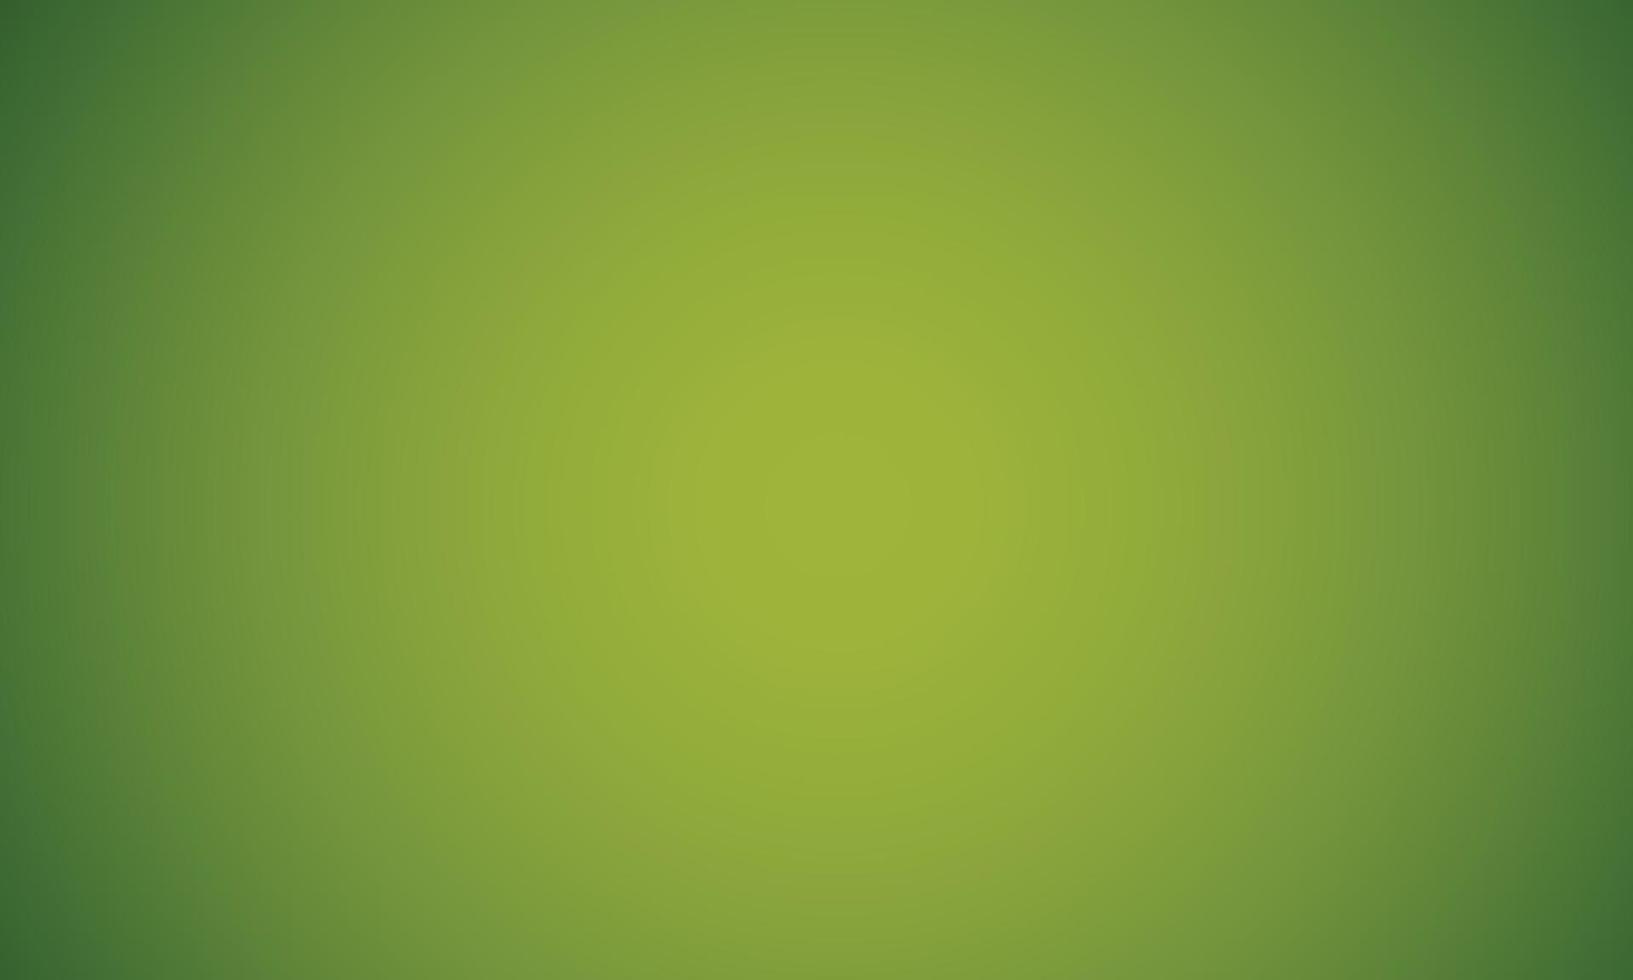 fond de couleur dégradé vert foncé jaune clair abstrait. illustration vectorielle eps10 vecteur